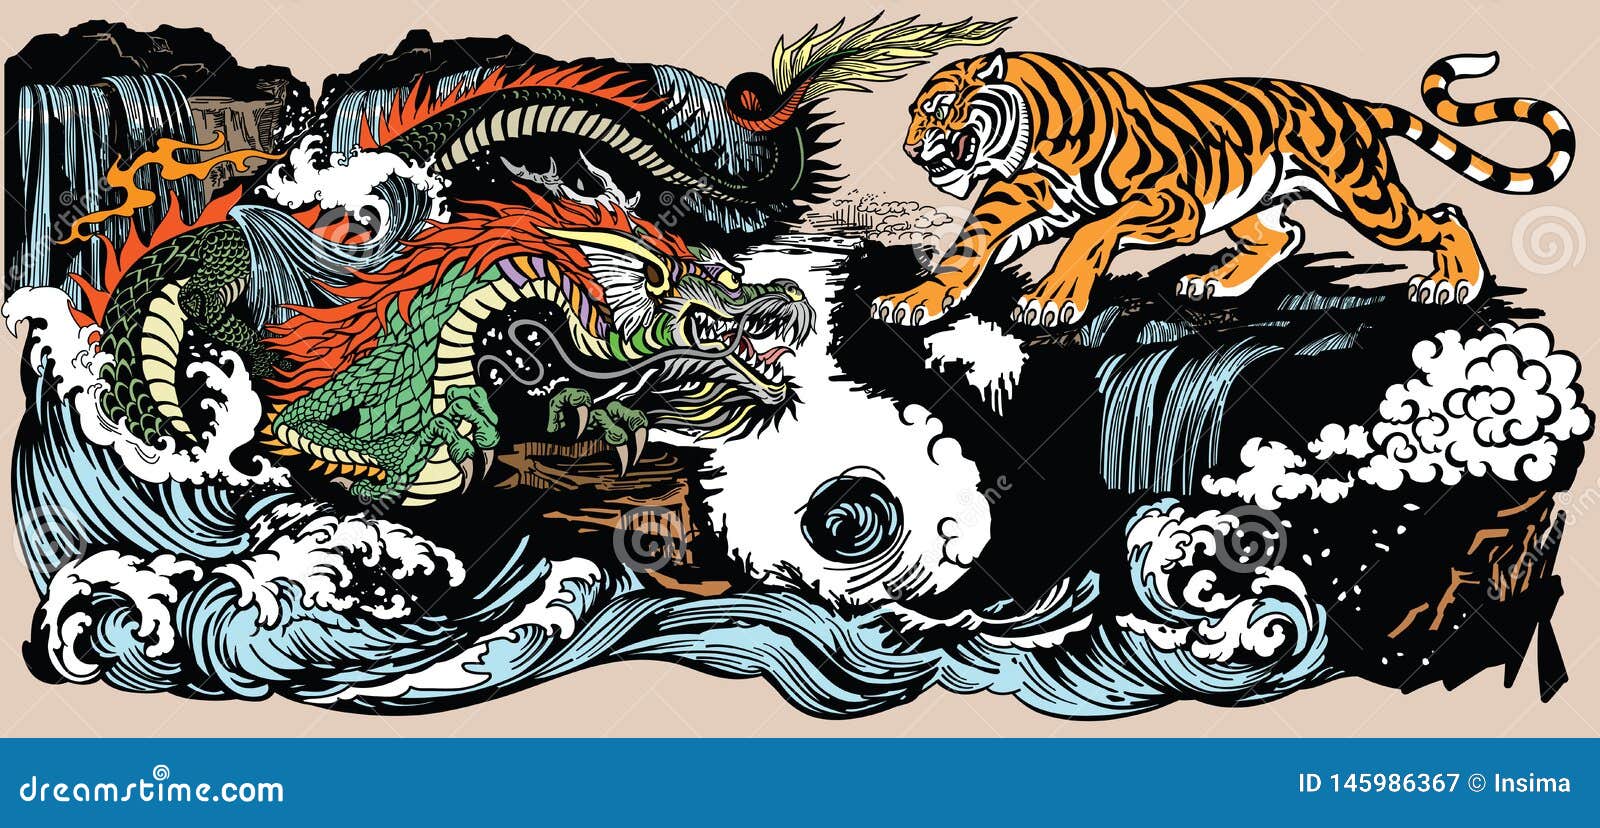 Обезьяна тигр змея. Тигр и дракон. Китайский дракон и тигр. Китайский тигр арт. Китайский тигр рисунок.